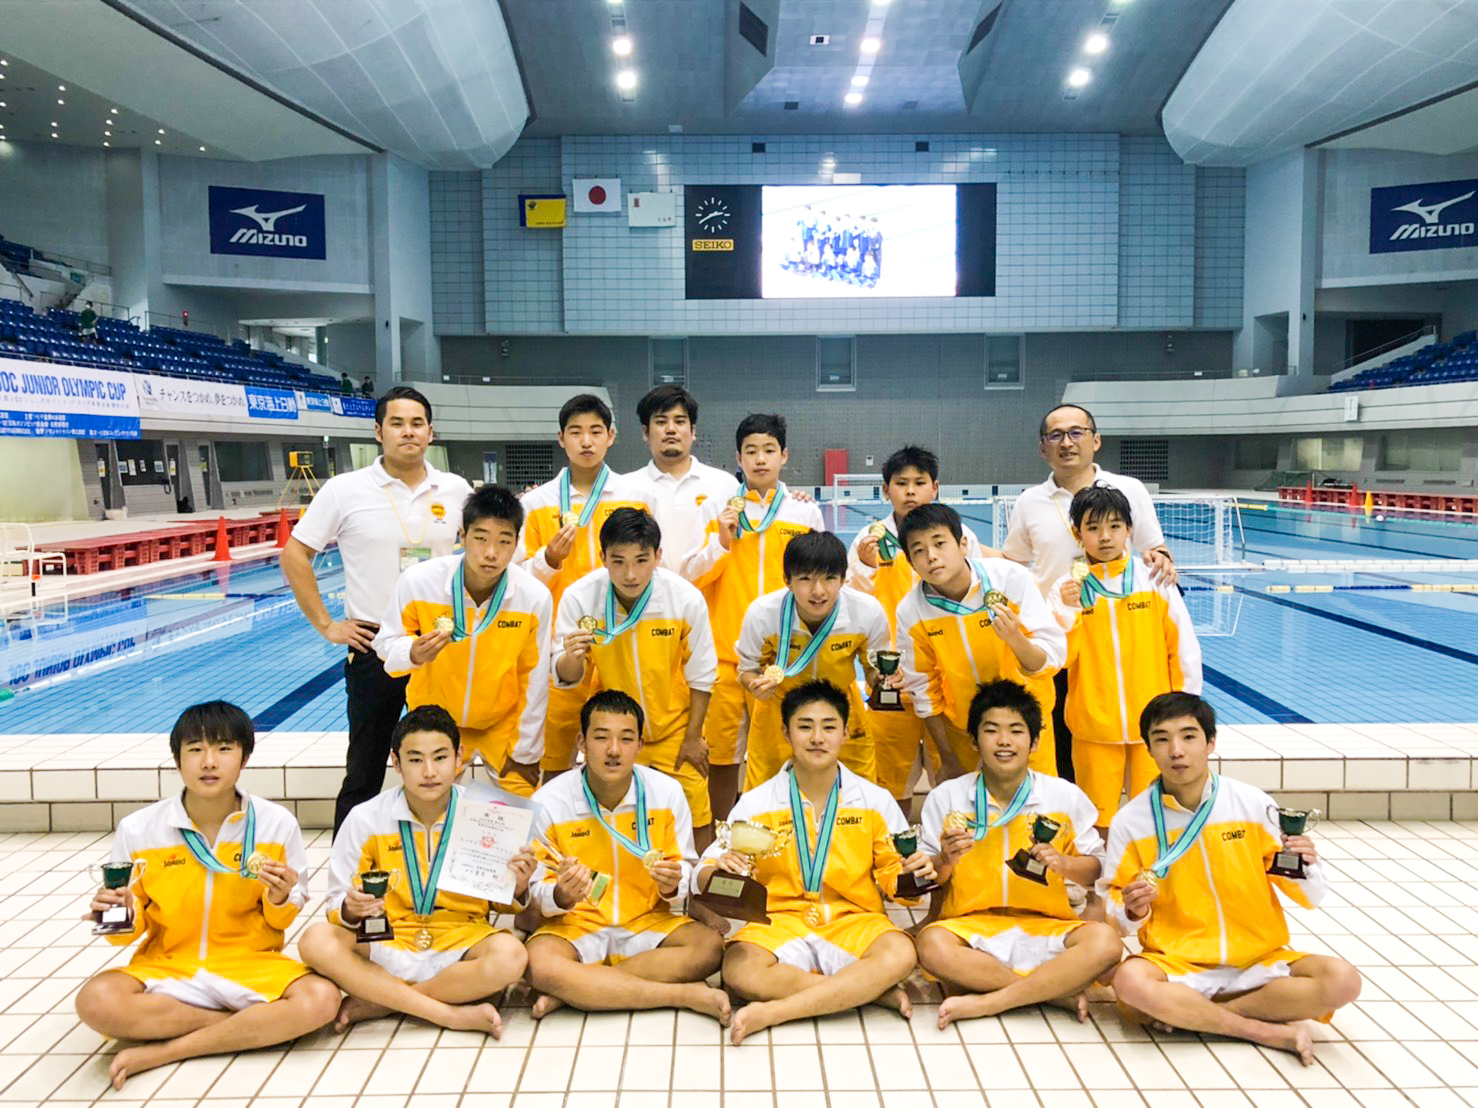 第43回全国jocジュニアオリンピックカップ春季水泳競技大会 水球中学生区分 優勝 カワサキスイミングクラブ